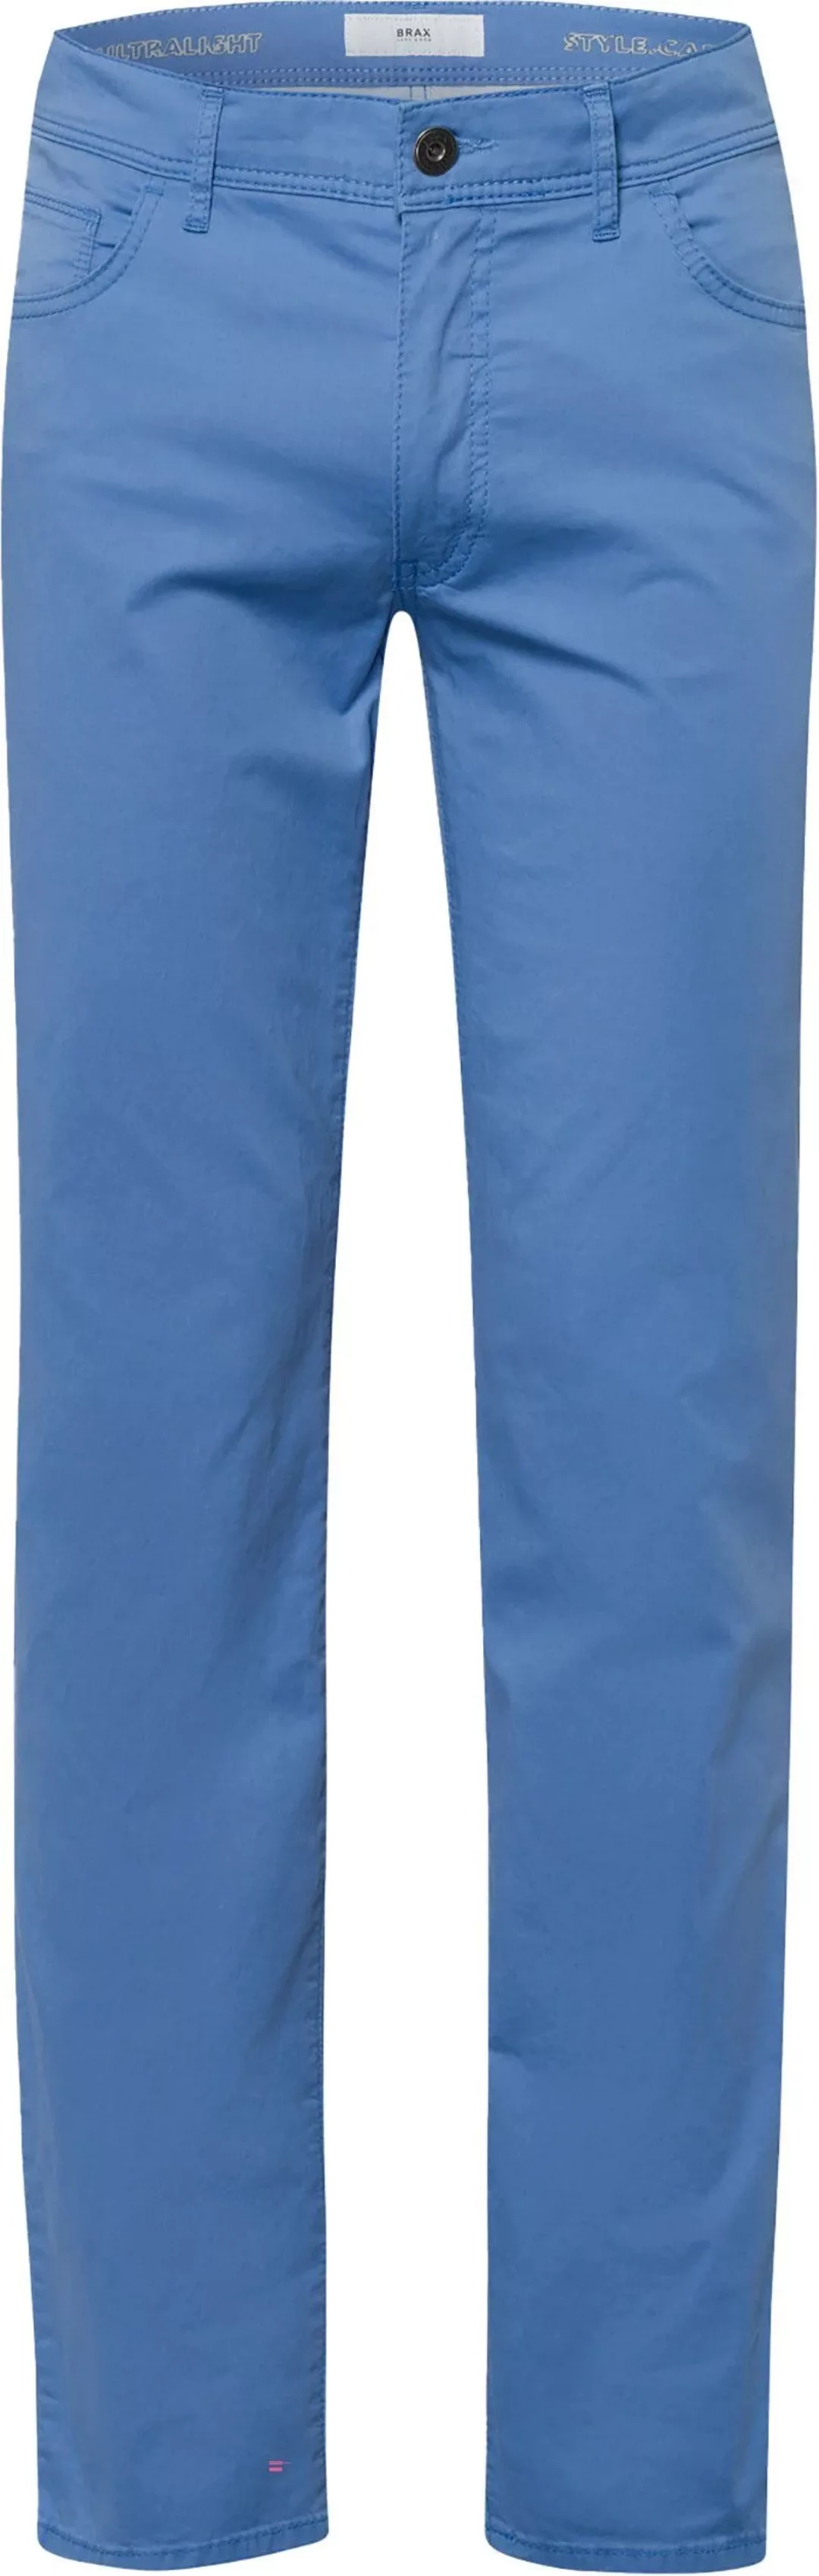 Brax Cadiz Hose Blau - Größe W 33 - L 30 günstig online kaufen